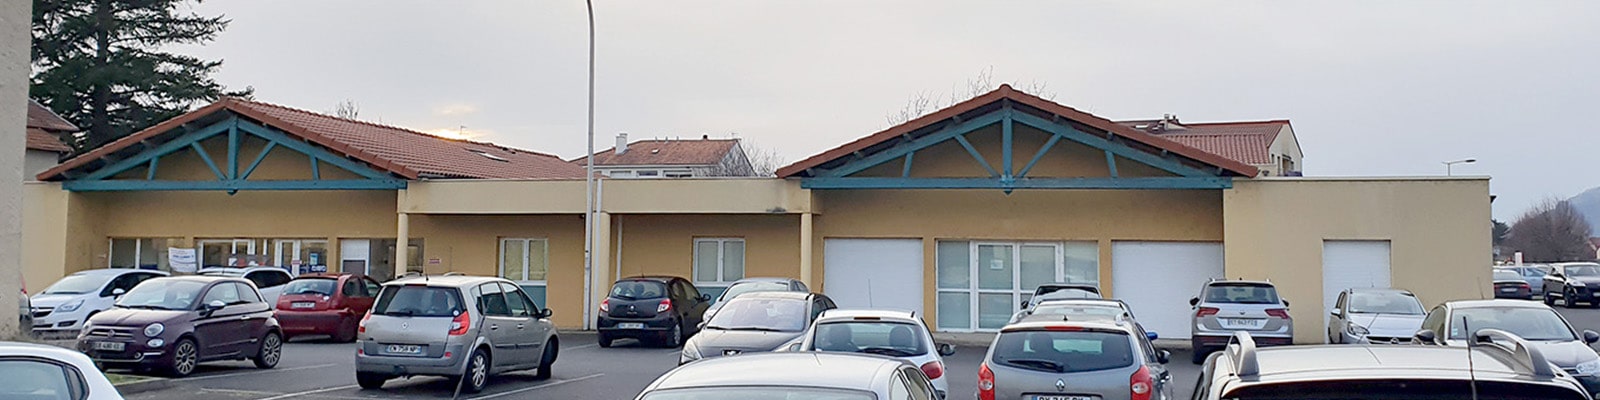 Radidôme, votre nouveau Centre de Radiologie et d’Imagerie médicale à Issoire